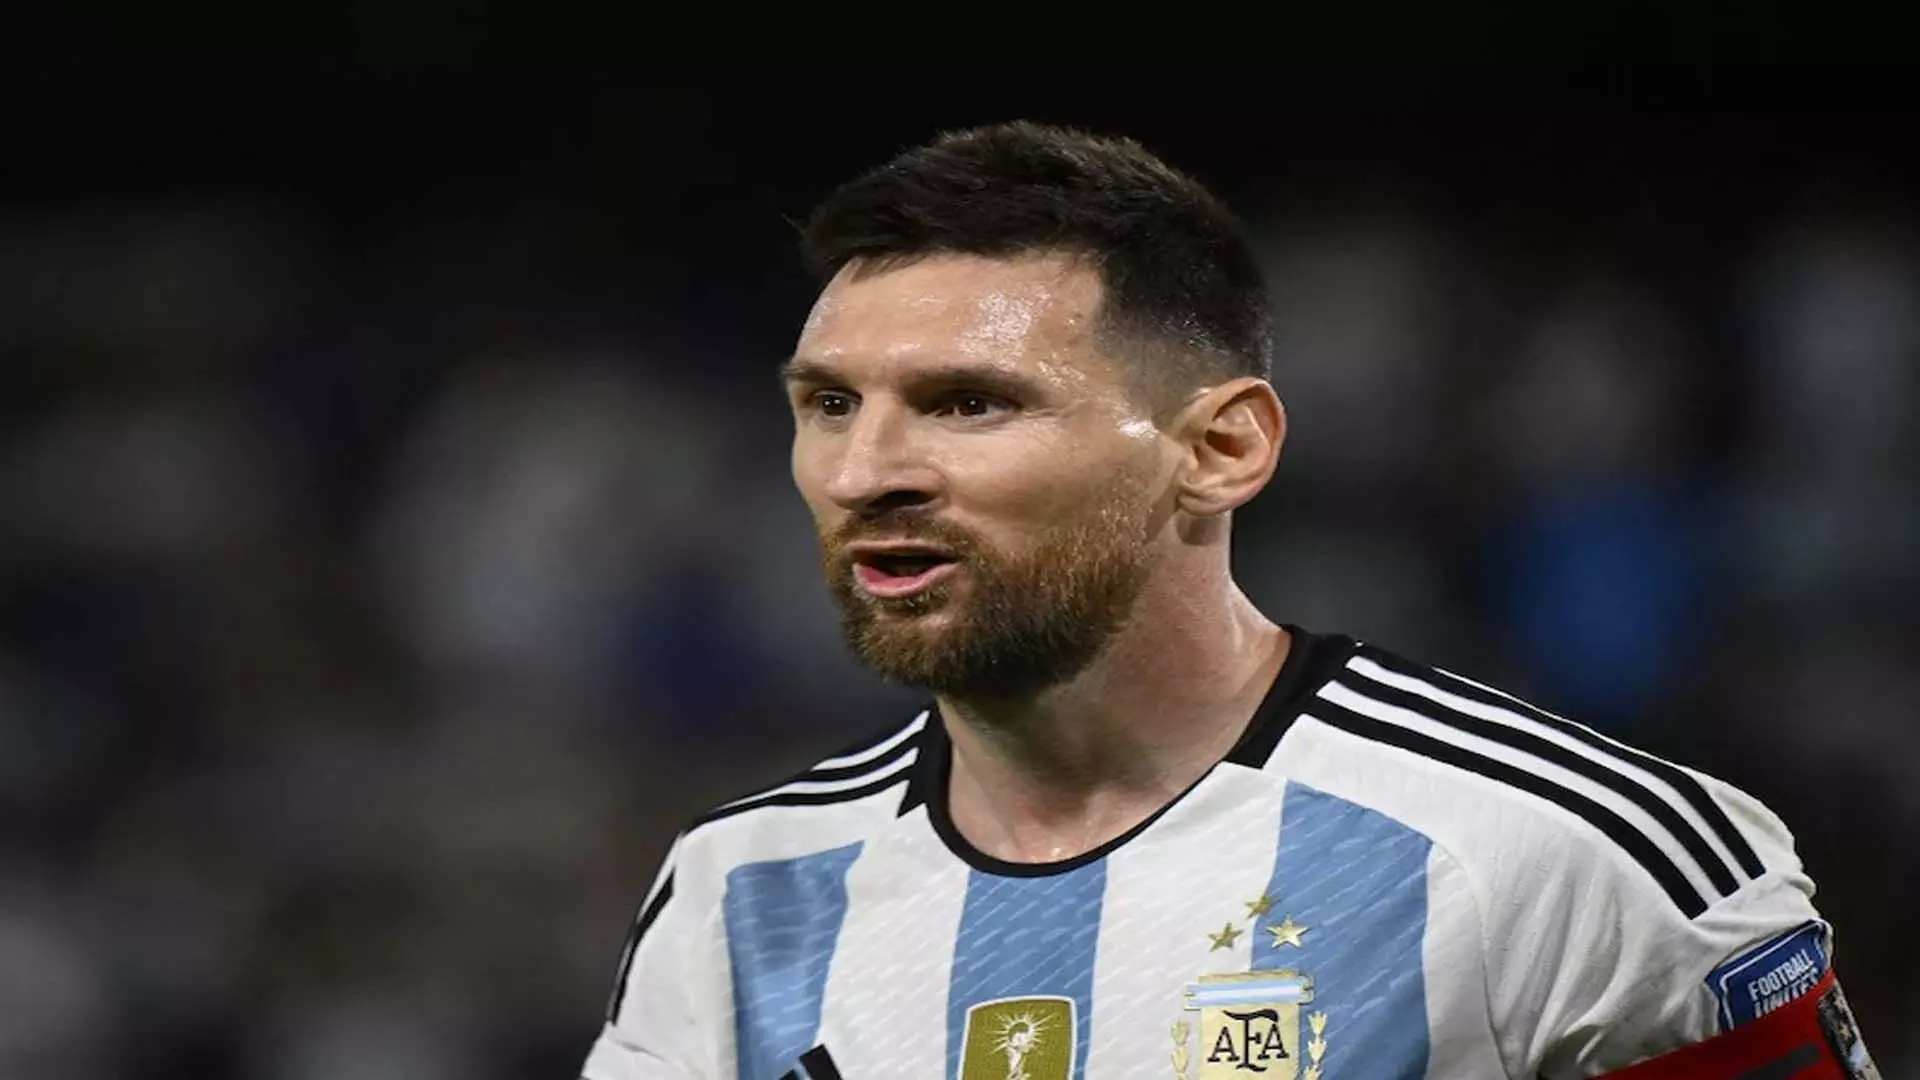 लियोनेल मेसी चोट के कारण अर्जेंटीना मैत्री मैचों से बाहर